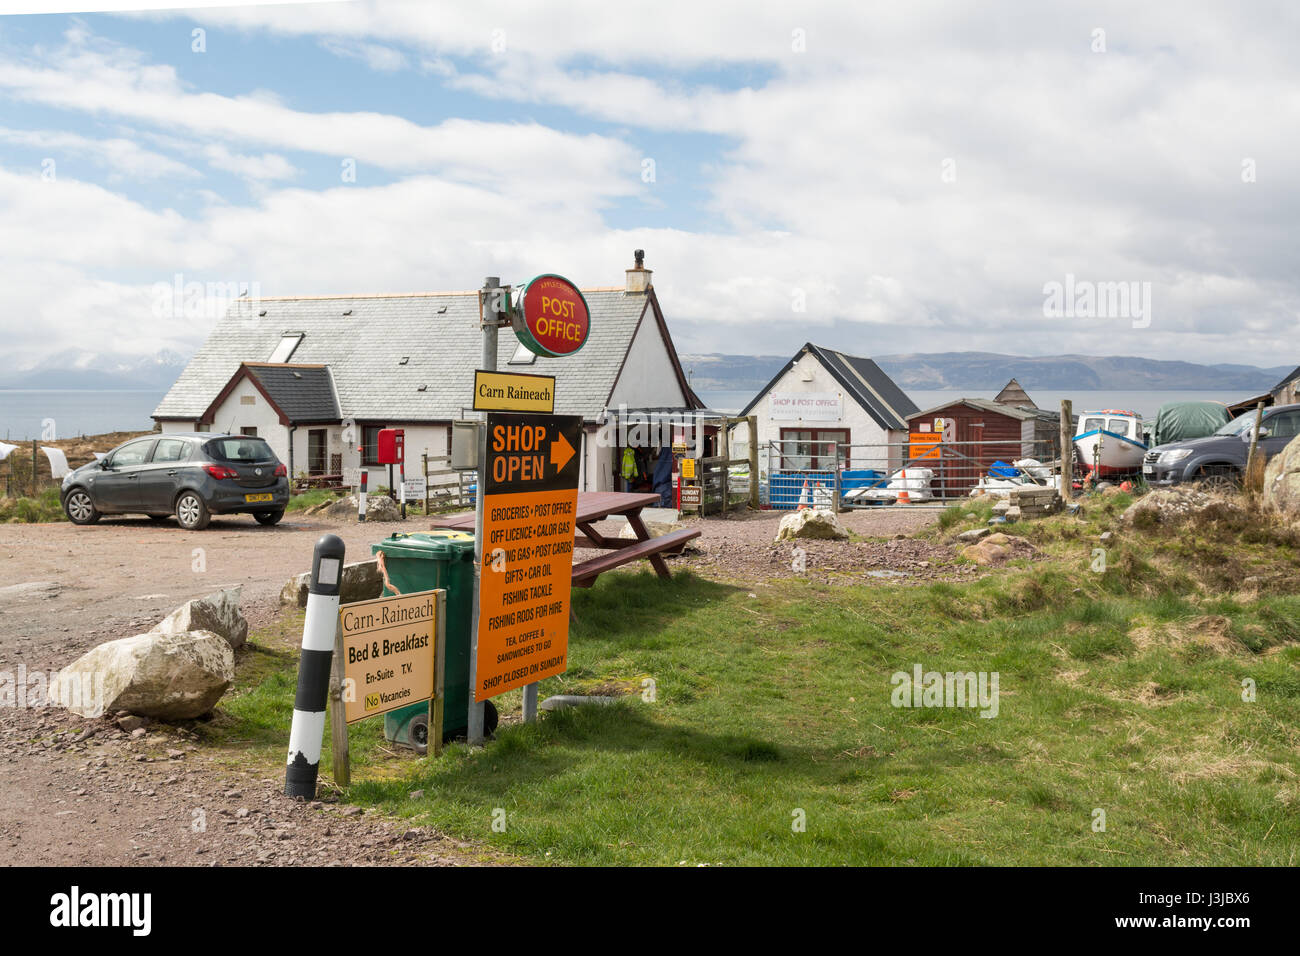 Applecross village shop and post office, Applecross, Applecross Peninsula, Wester Ross, Scotland, UK Stock Photo